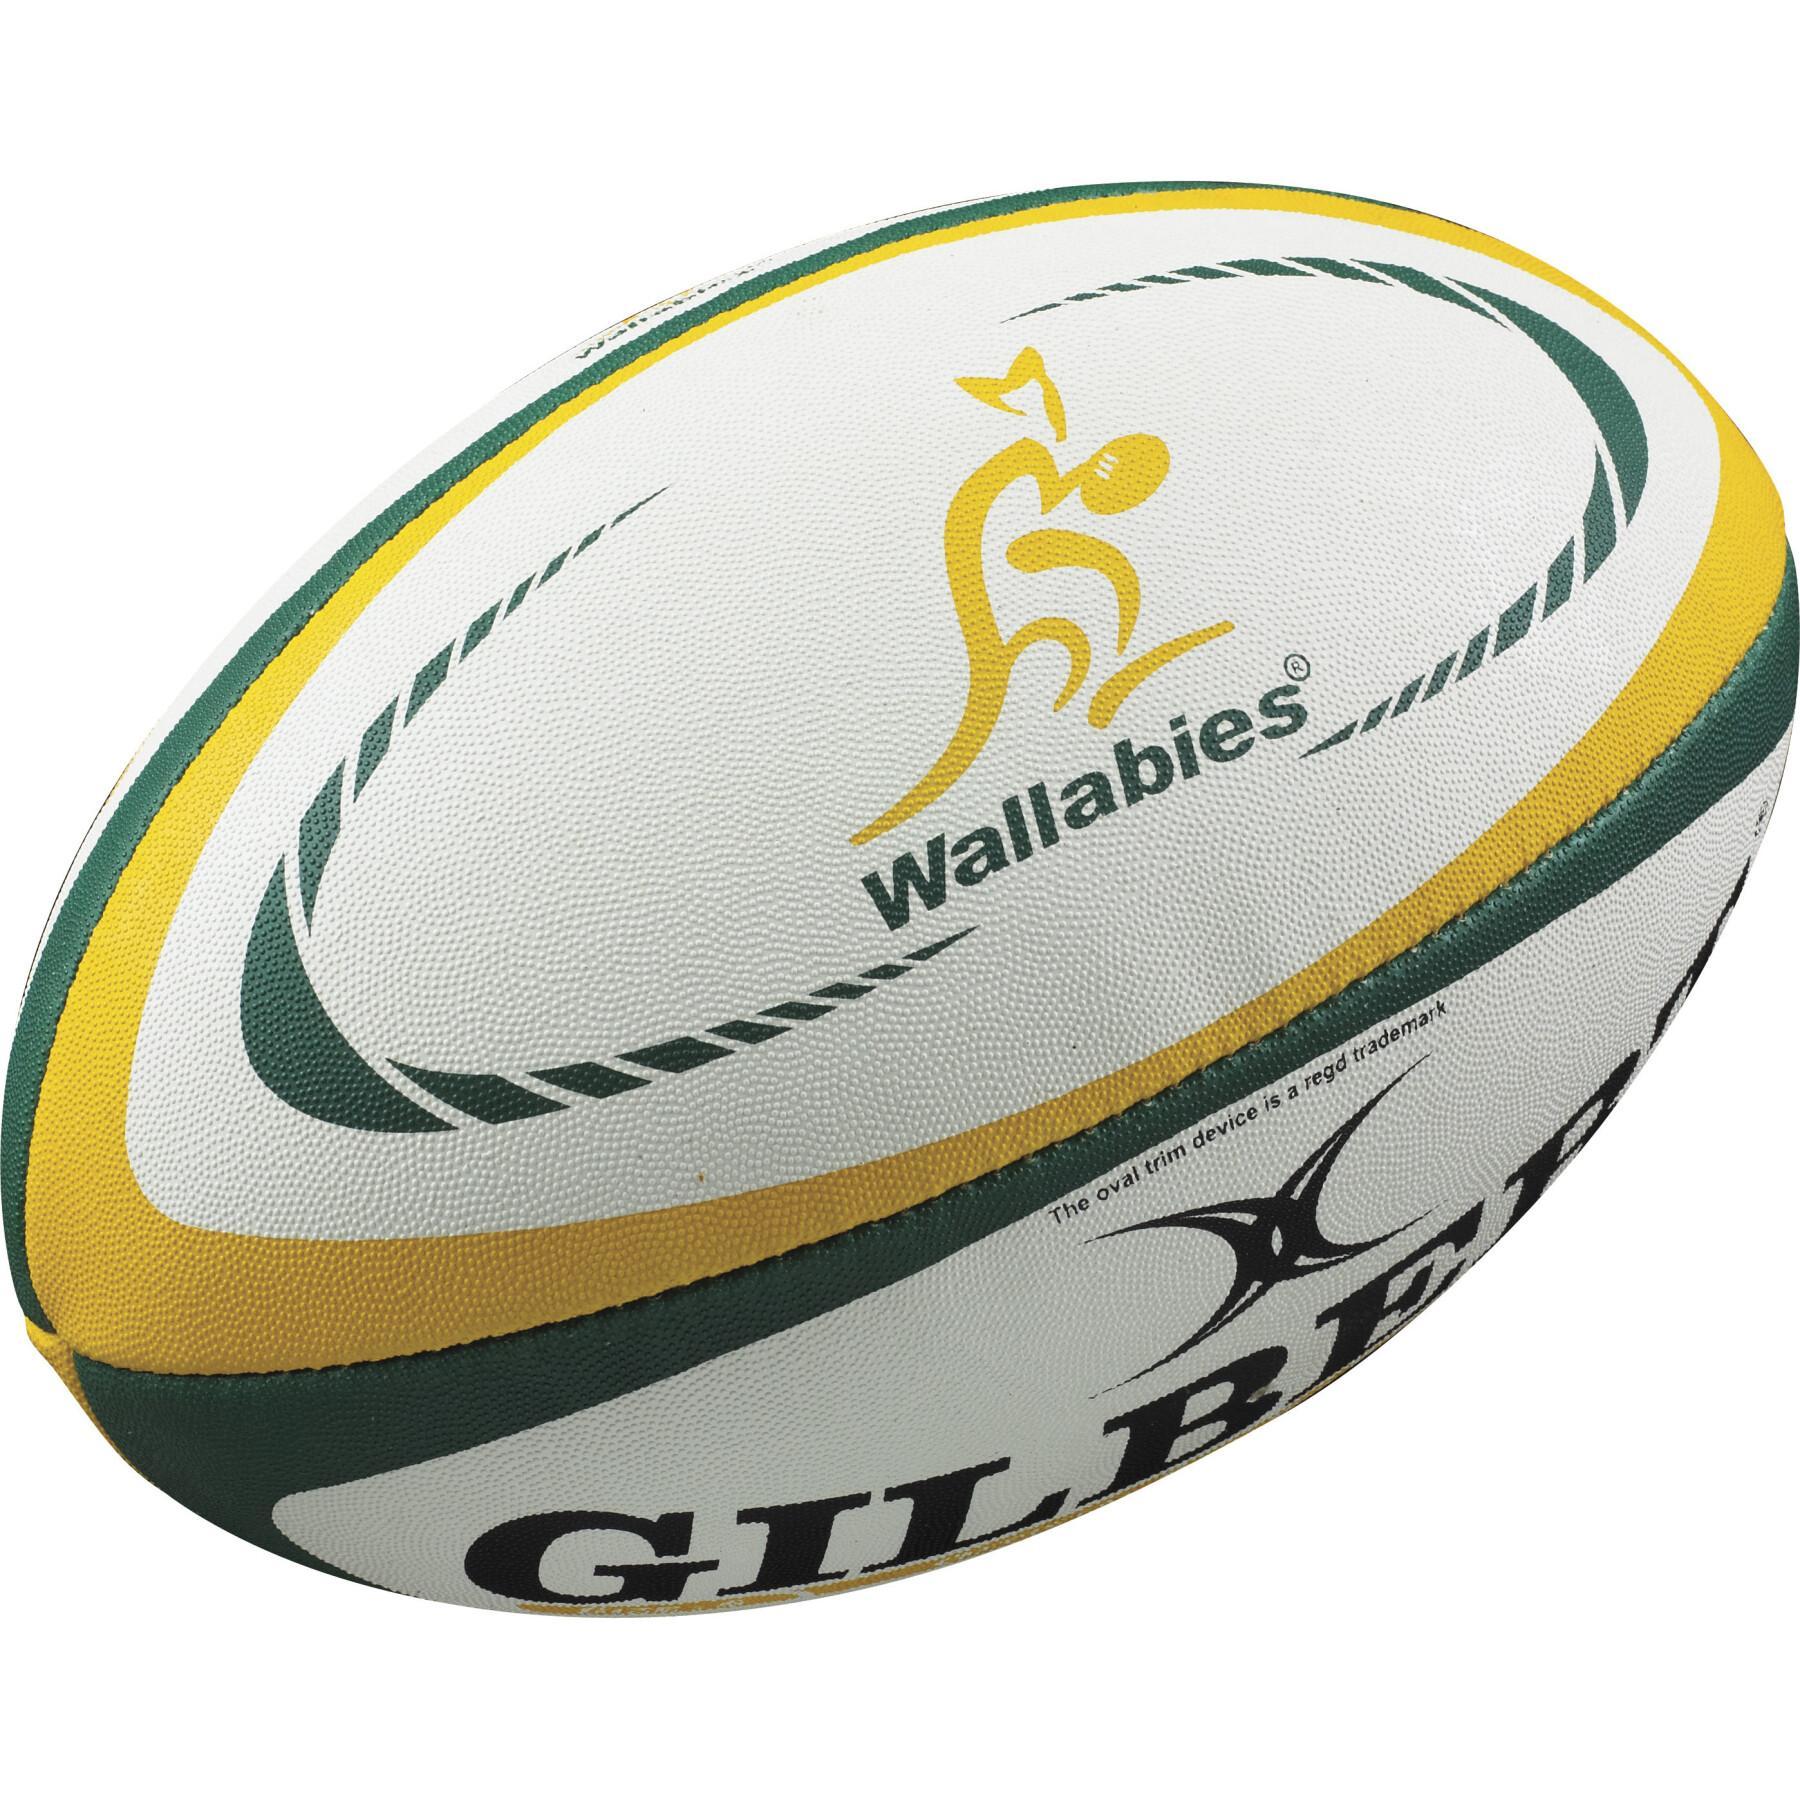 Repliki piłki do rugby Gilbert Australie (taille 5)